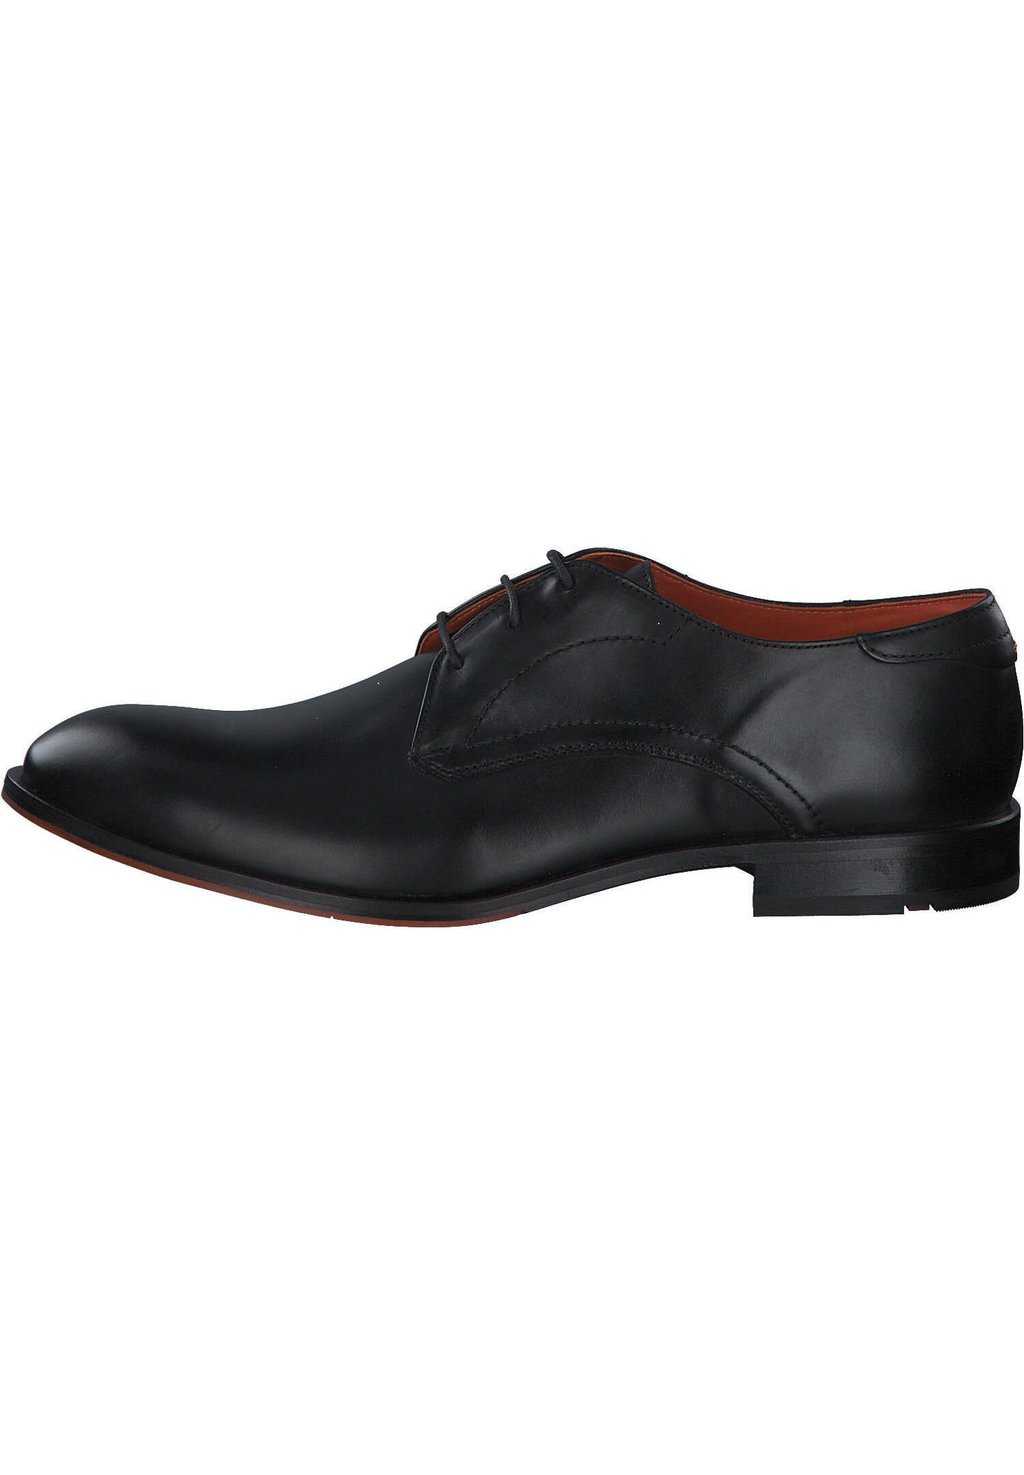 Деловые туфли на шнуровке PARBAT Lloyd, цвет schwarz деловые туфли на шнуровке suffolk lloyd цвет blau